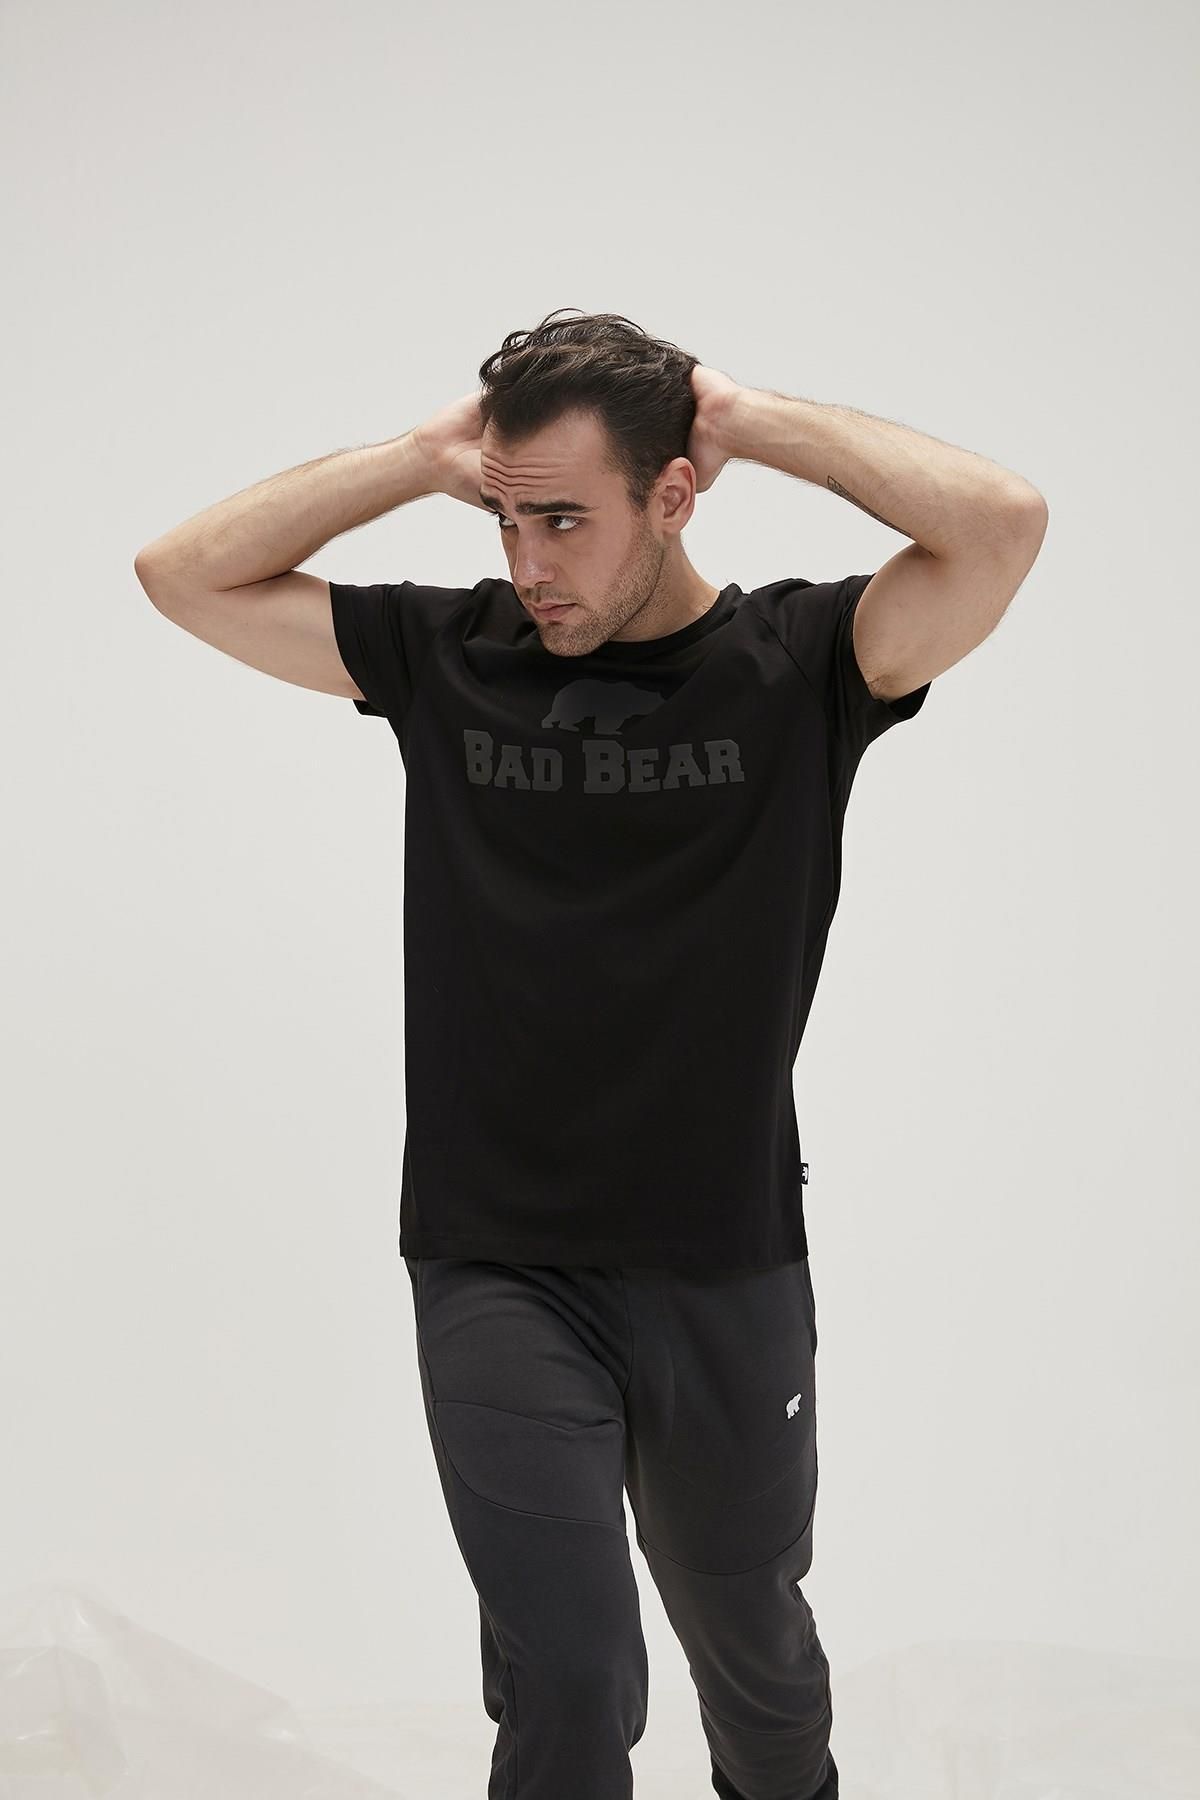 Bad Bear 19.01.07.002 Ber Bear Ayi Baski 0 Yaka Kisa Kol Tshirt